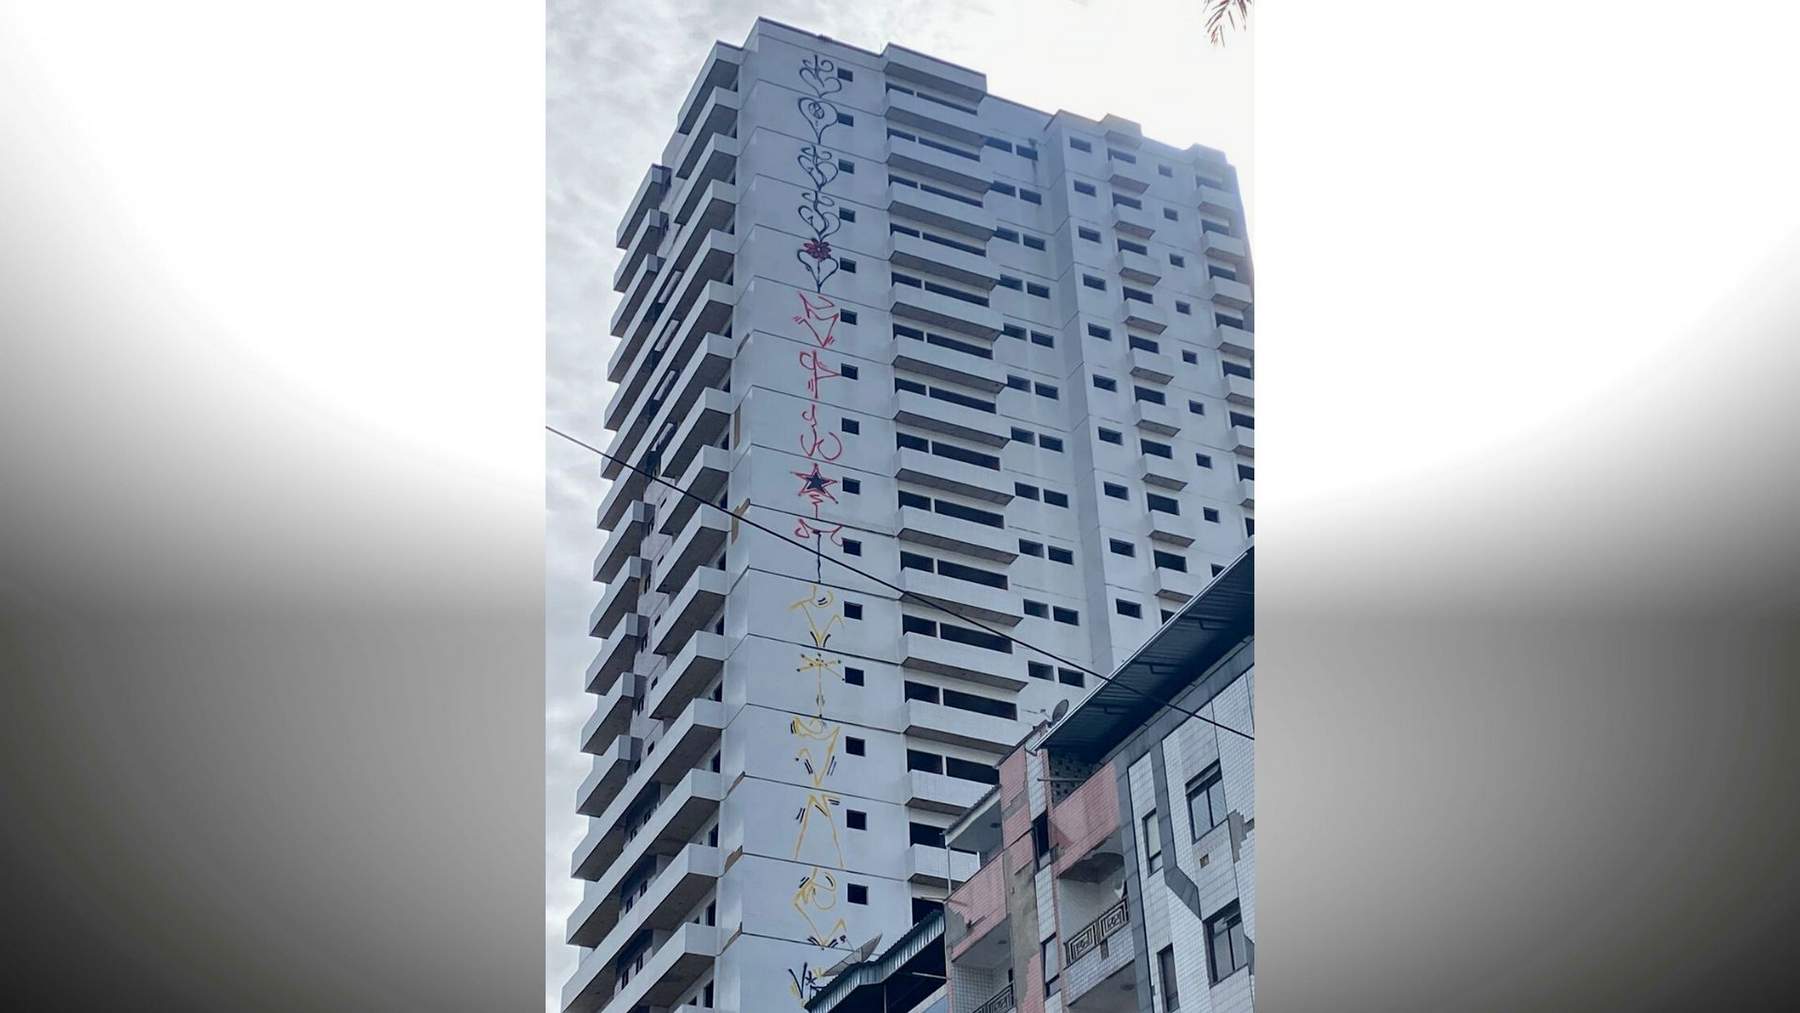 Homens de BH picham prédio de 24 andares em Manhuaçu e são presos